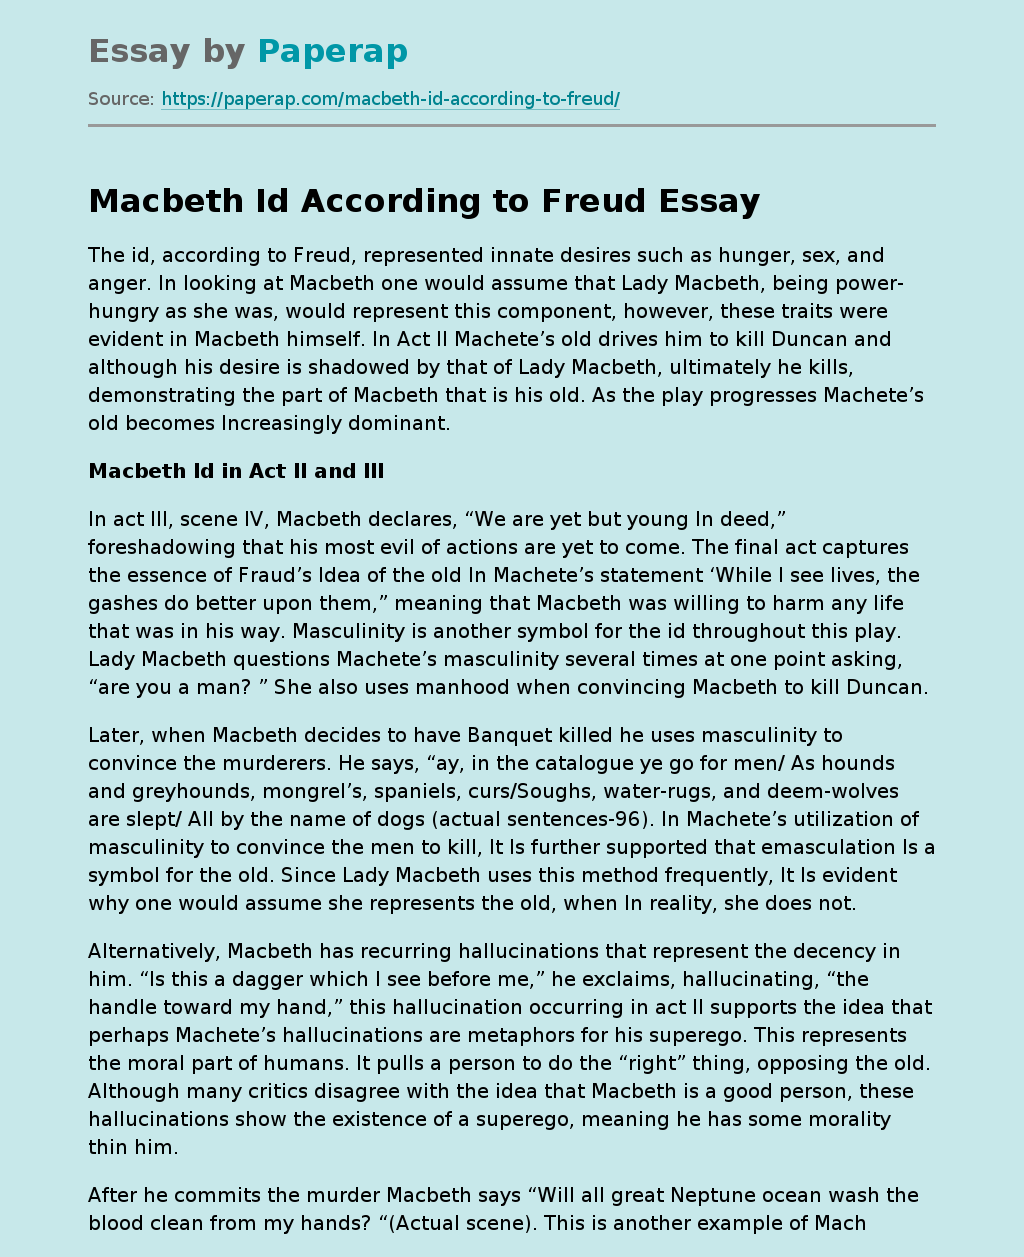 Macbeth Id According to Freud